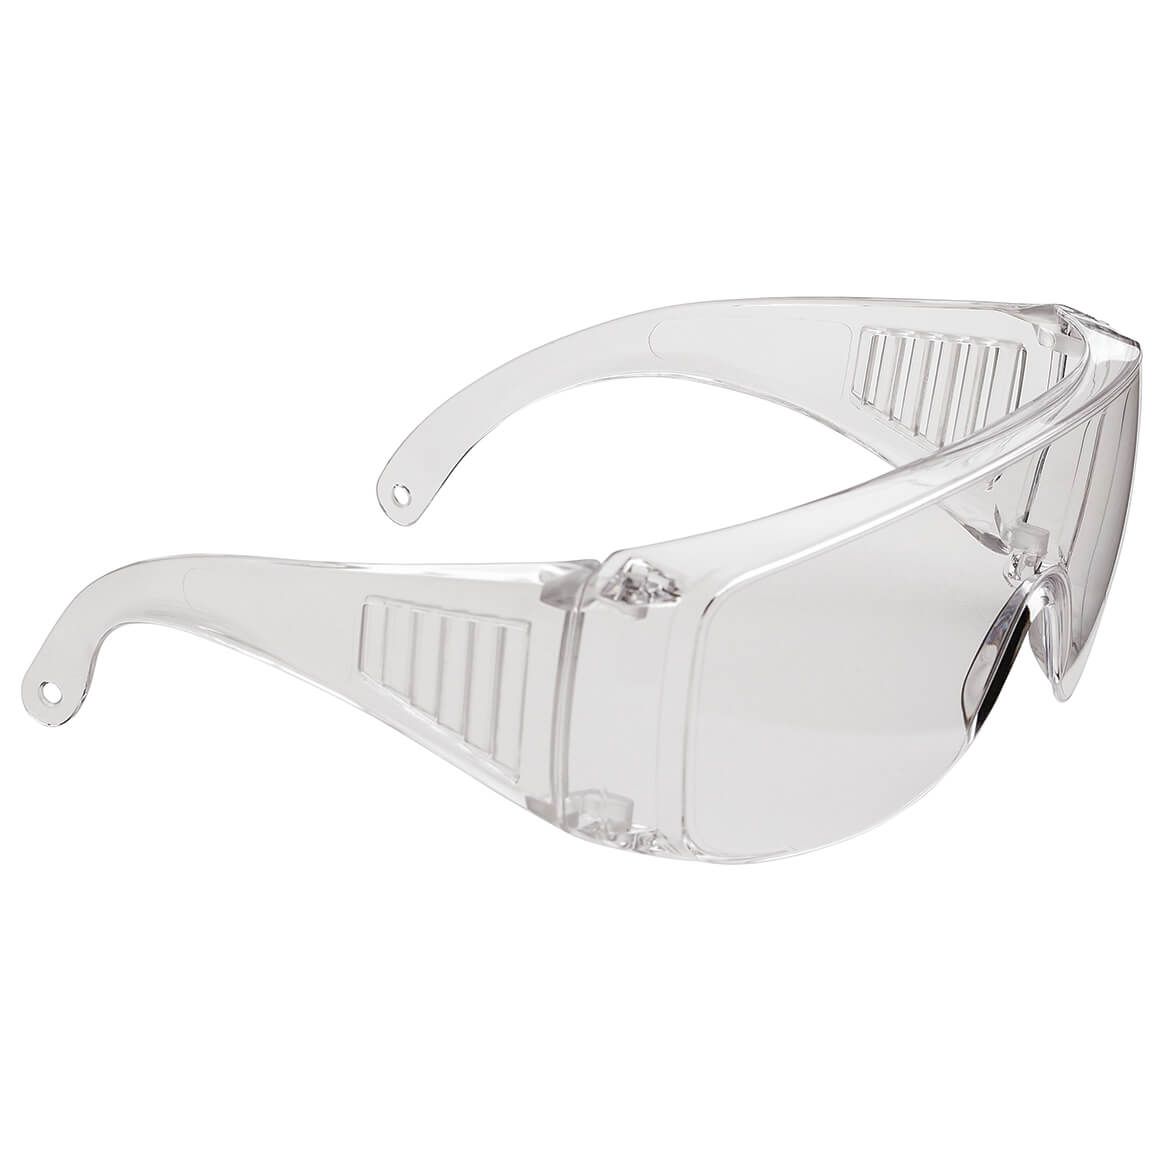 Anti-Fog Safety Eyeglasses + '-' + 375132